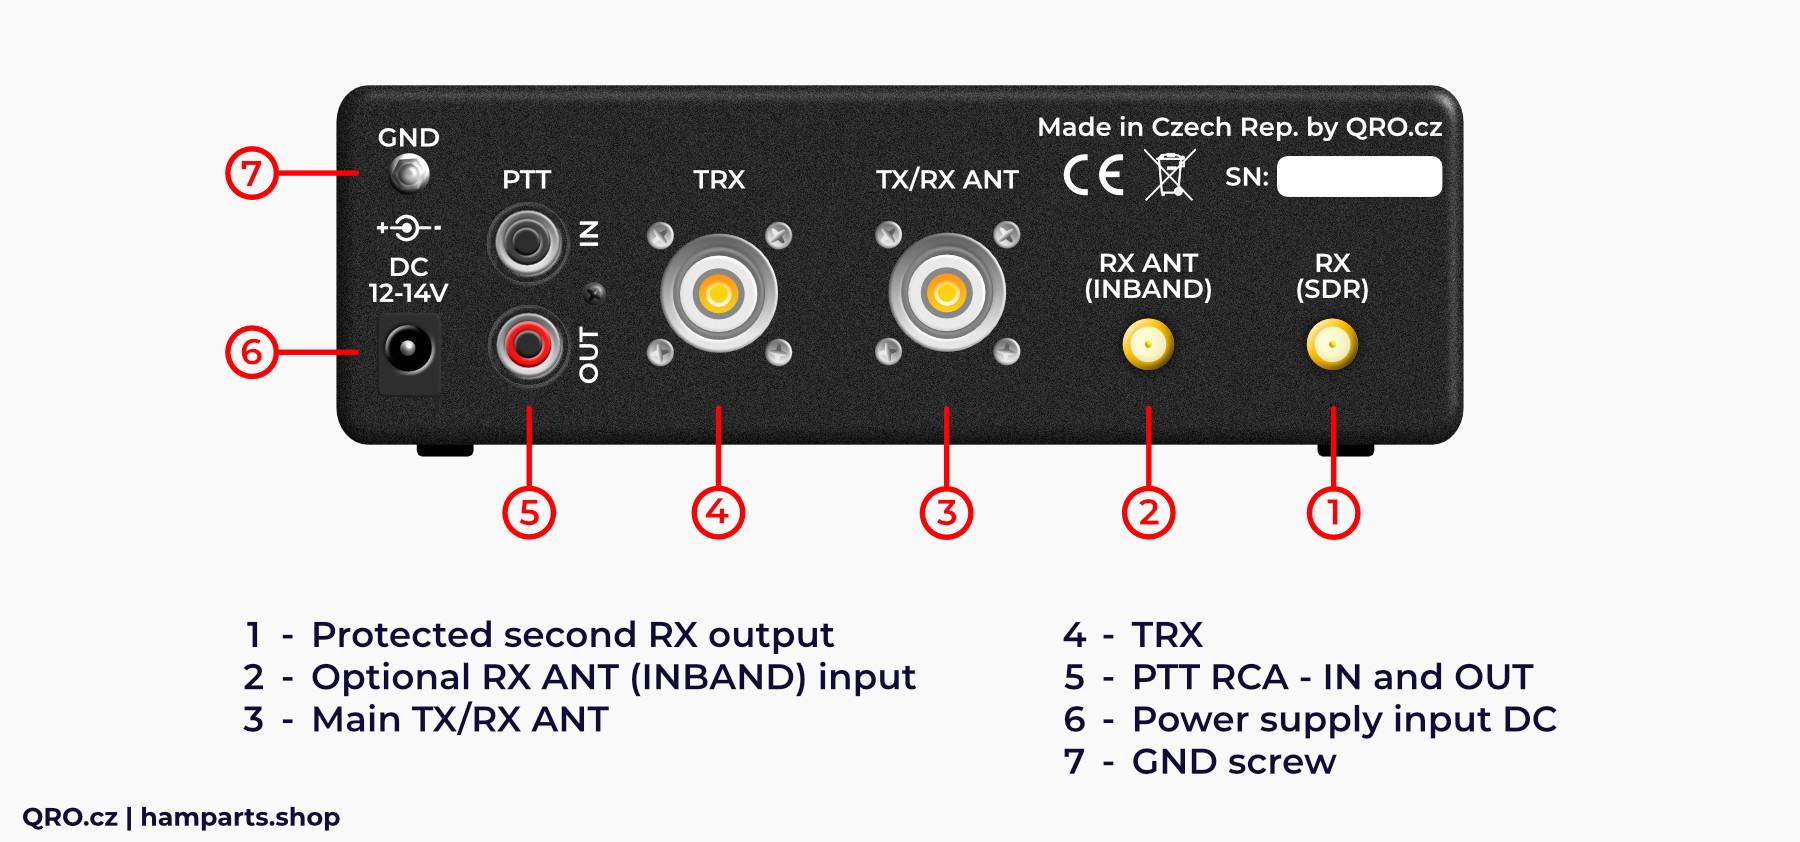 rx audite sdr switch splitter rear panel description qro.cz hamparts.shop